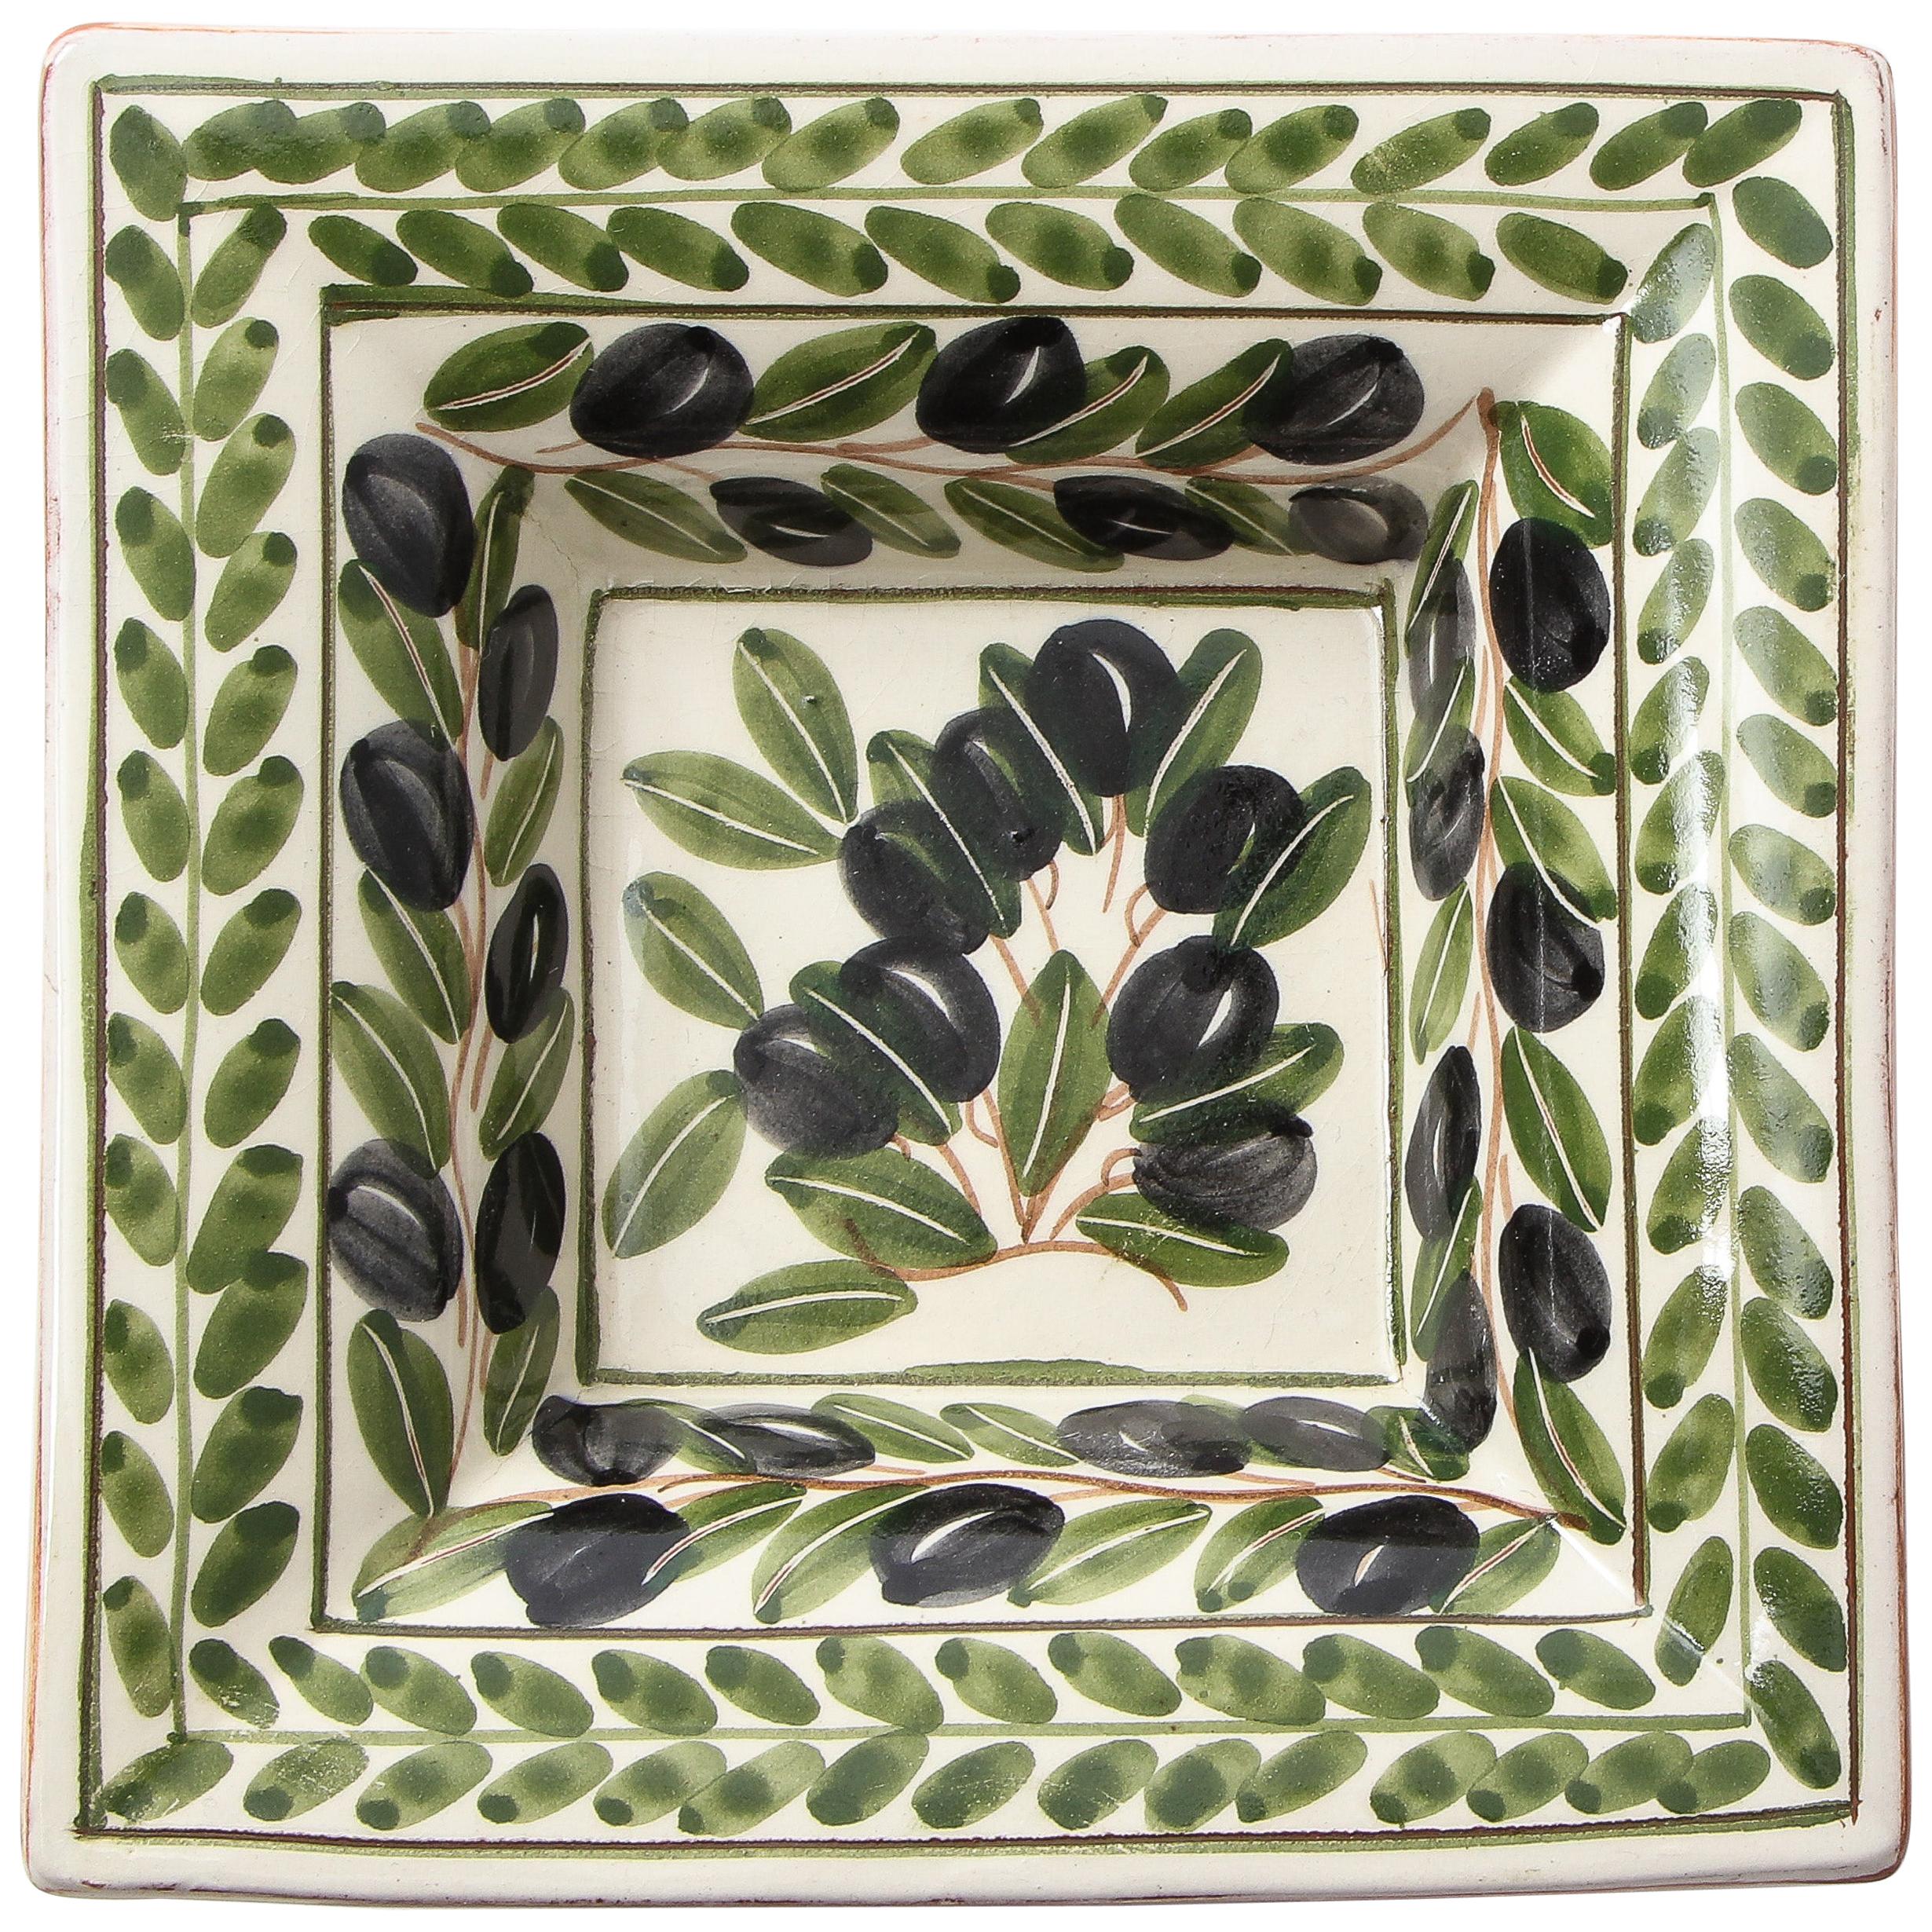 Aschenbecher aus portugiesischer Keramik, verziert mit gemalten Oliven und deren Blättern. Darunter befindet sich eine glasierte Terrakotta-Farbe.